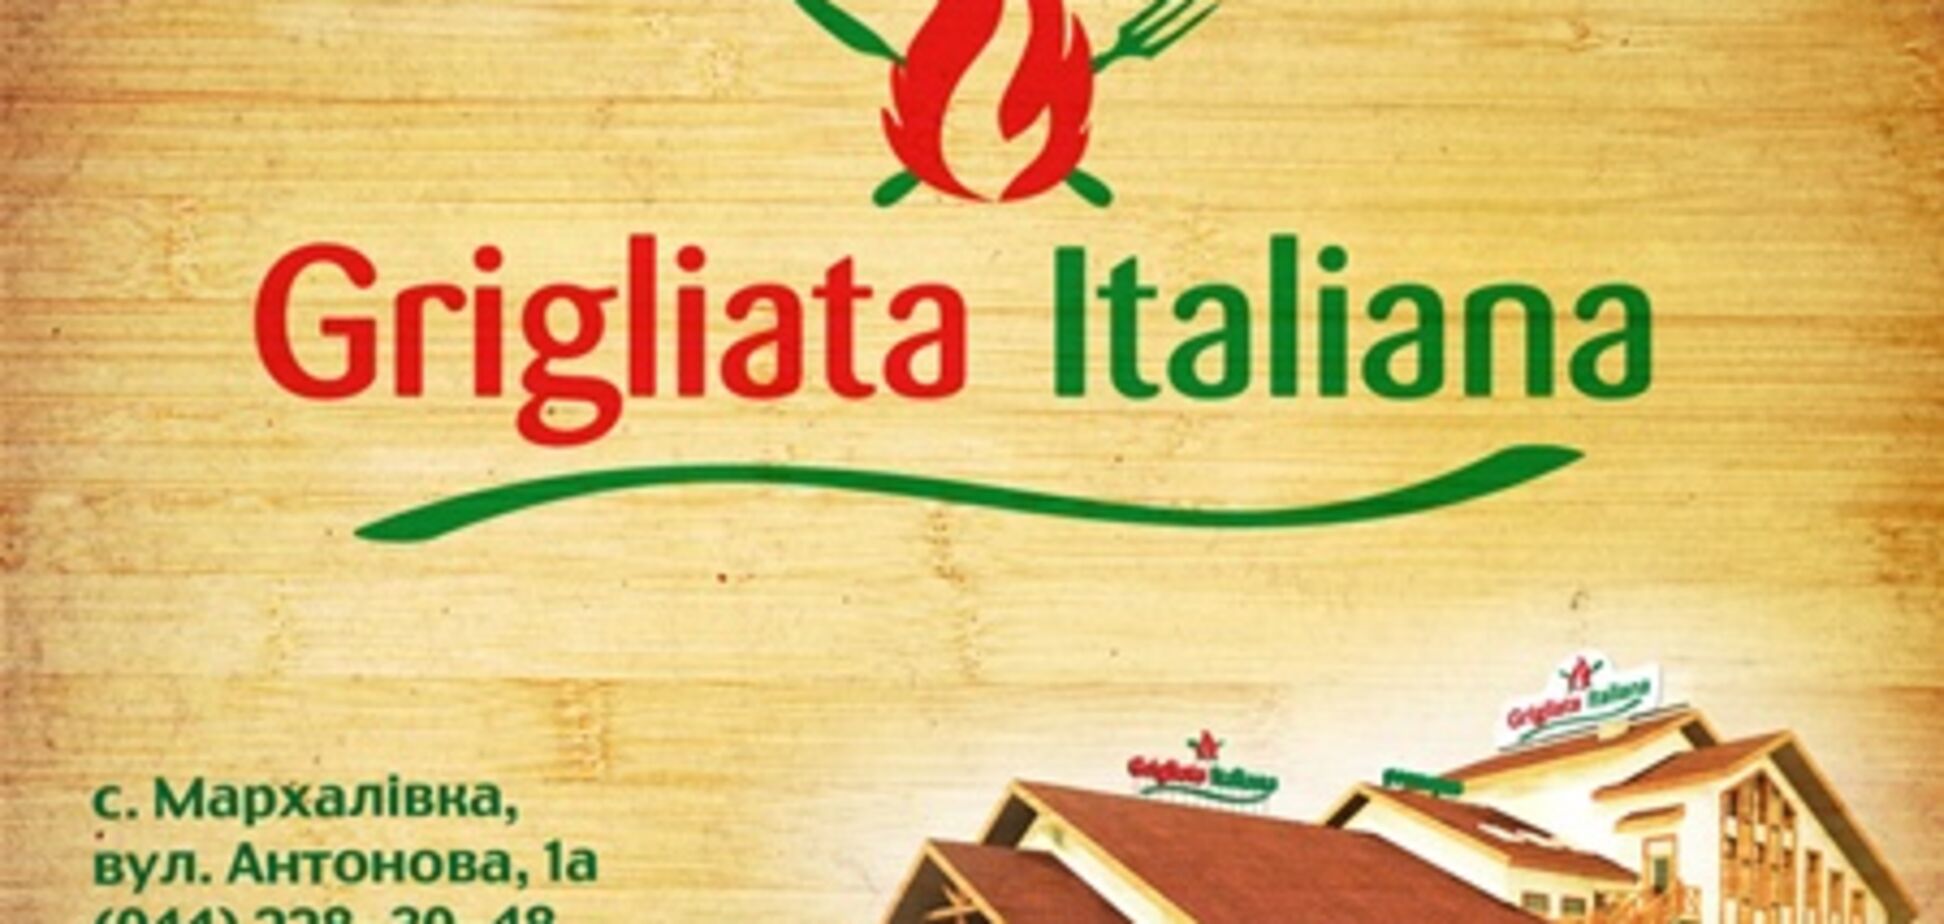 На 25 км Одесской трассы открывается новый ресторан 'Grigliata Italiana'